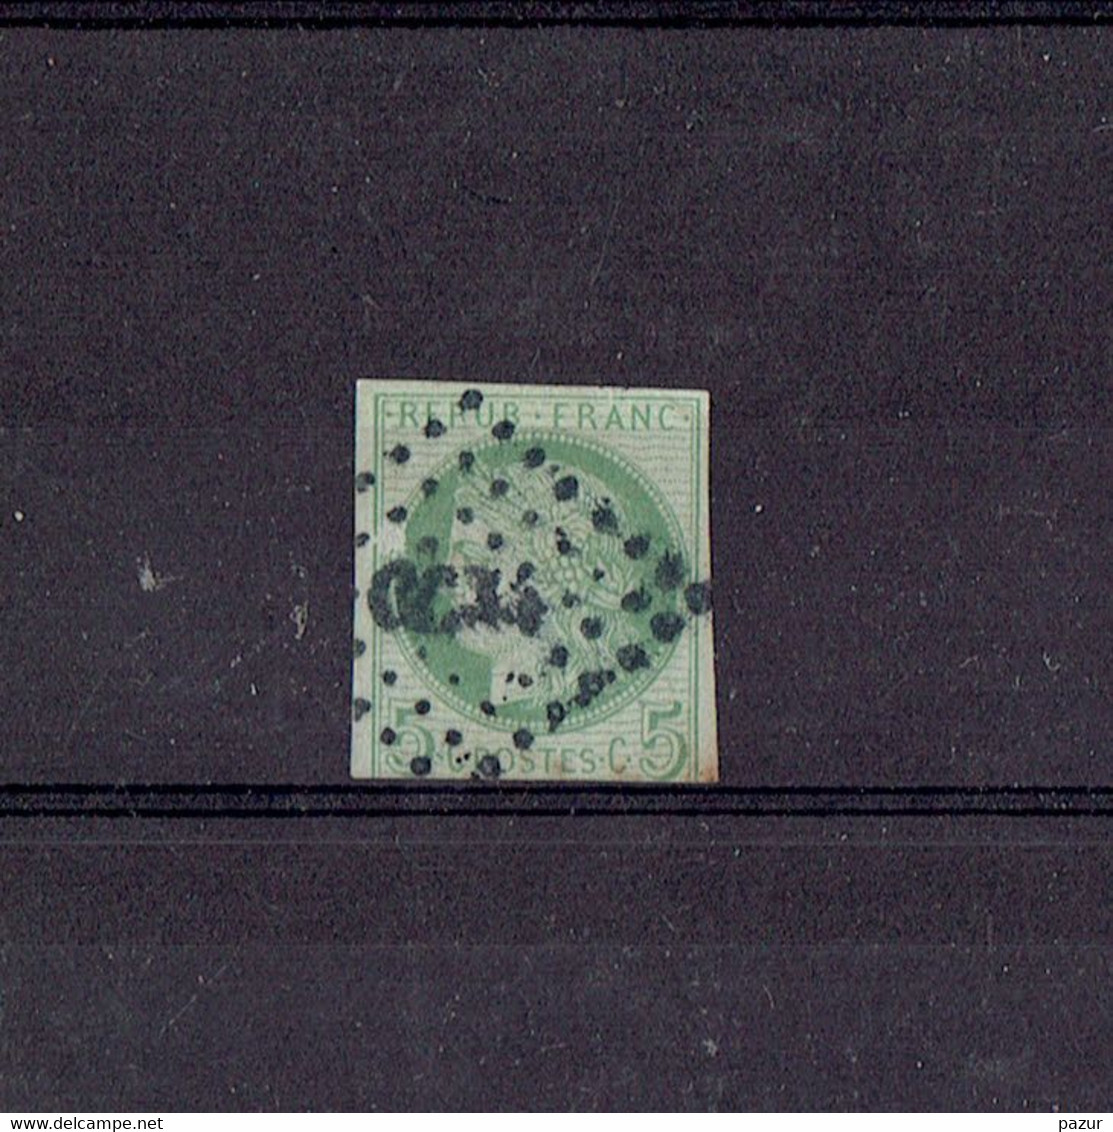 TP COLONIES FRANCAISES COCHINCHINE -TP N°17 OB - CORRESPONDANCE D'ARMEES CCN4 BUREAU DE CHO LEN - RARE - 1872 - Used Stamps